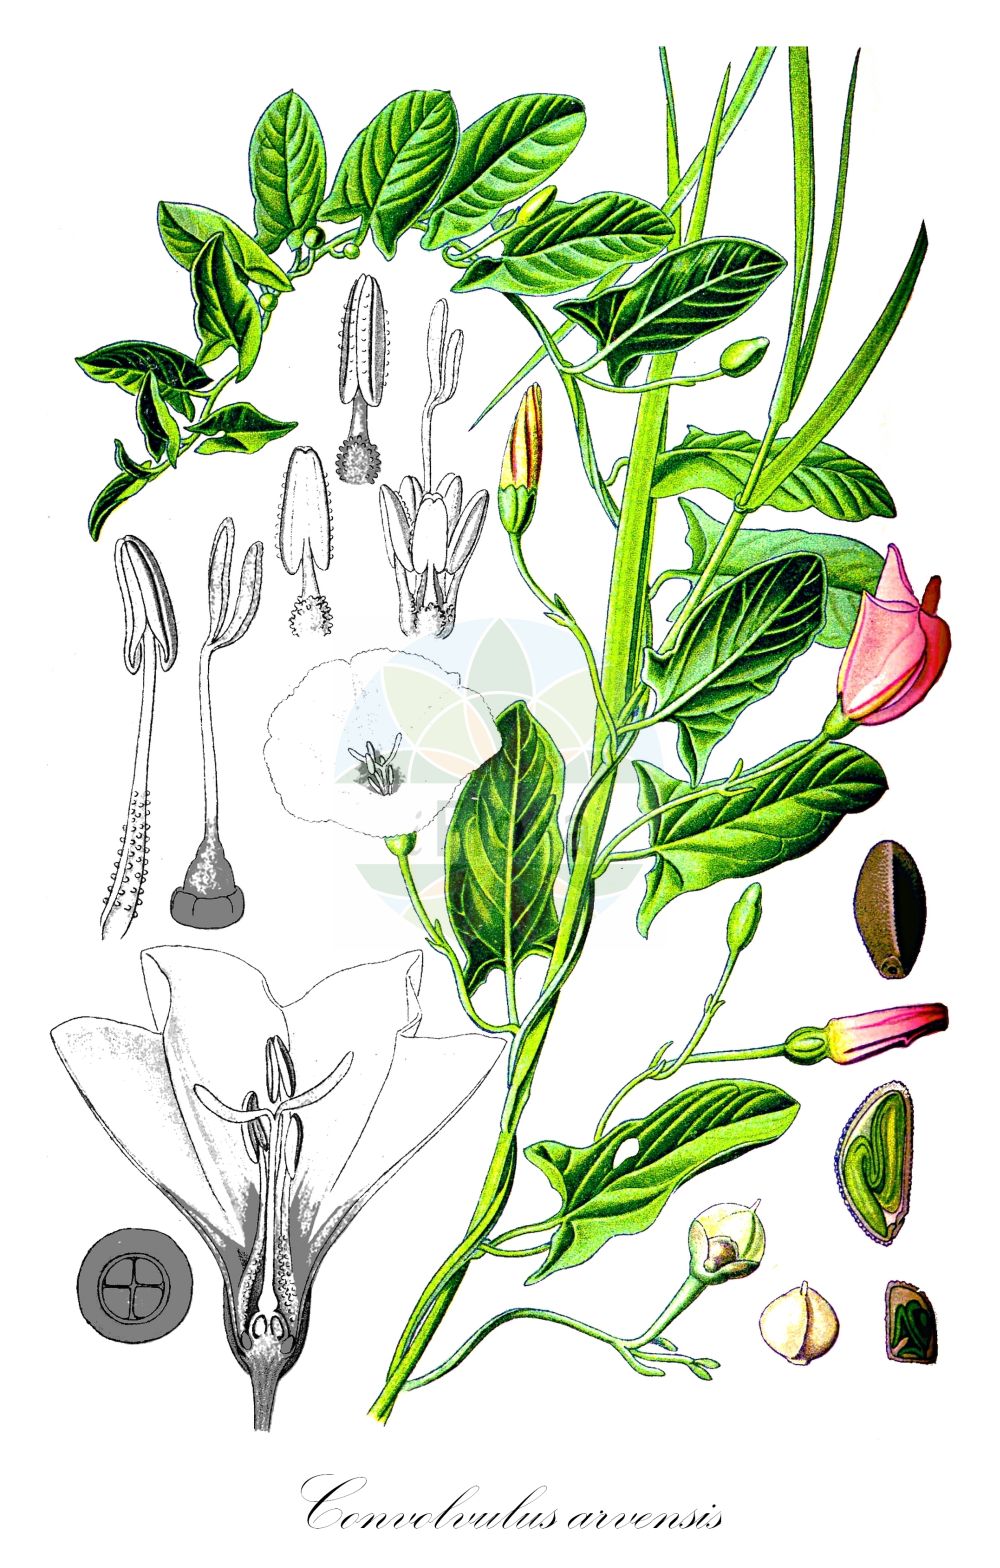 Historische Abbildung von Convolvulus arvensis (Acker-Winde - Field Bindweed). Das Bild zeigt Blatt, Bluete, Frucht und Same. ---- Historical Drawing of Convolvulus arvensis (Acker-Winde - Field Bindweed). The image is showing leaf, flower, fruit and seed.(Convolvulus arvensis,Acker-Winde,Field Bindweed,Convolvulus arvensis,Convolvulus auriculatus,Convolvulus cherleri,Convolvulus corsicus,Acker-Winde,Field Bindweed,Gray Bindweed,Cornbine,Field Morning Glory,Possession Vine,Small Bindweed,Convolvulus,Winde,Bindweed,Convolvulaceae,Windengewächse,Bindweed family,Blatt,Bluete,Frucht,Same,leaf,flower,fruit,seed,Thomé (1885))